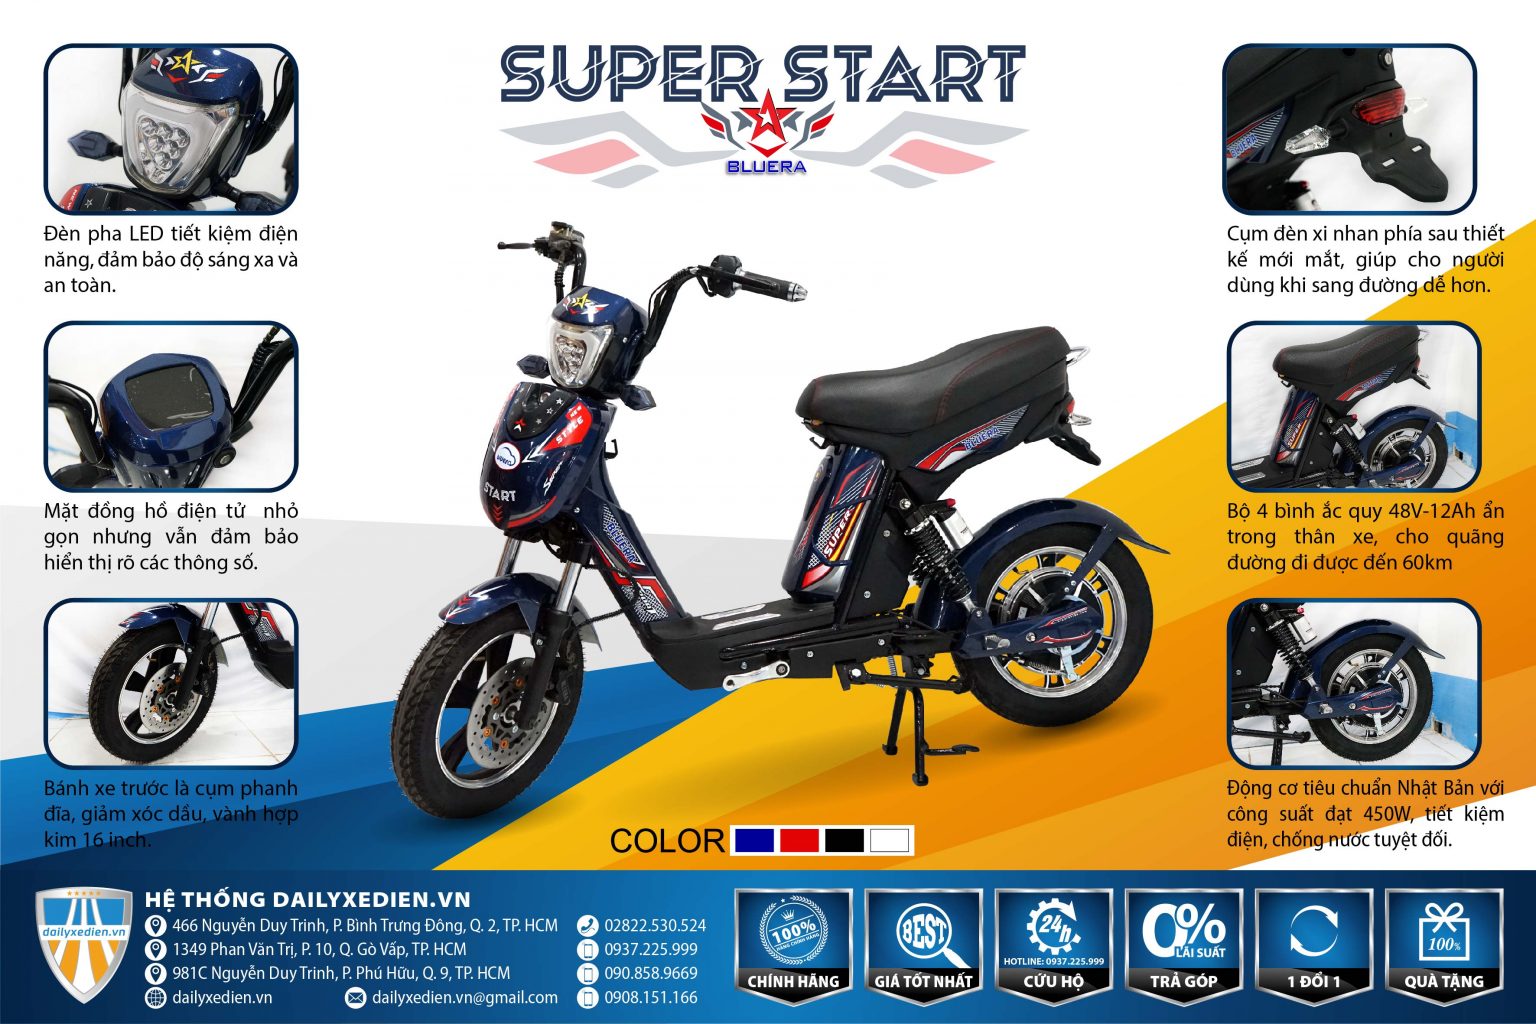 xe dap dien bluera super star ct 22 01 1536x1024 1 - Mua xe đạp điện ở đâu chính hãng giá tốt